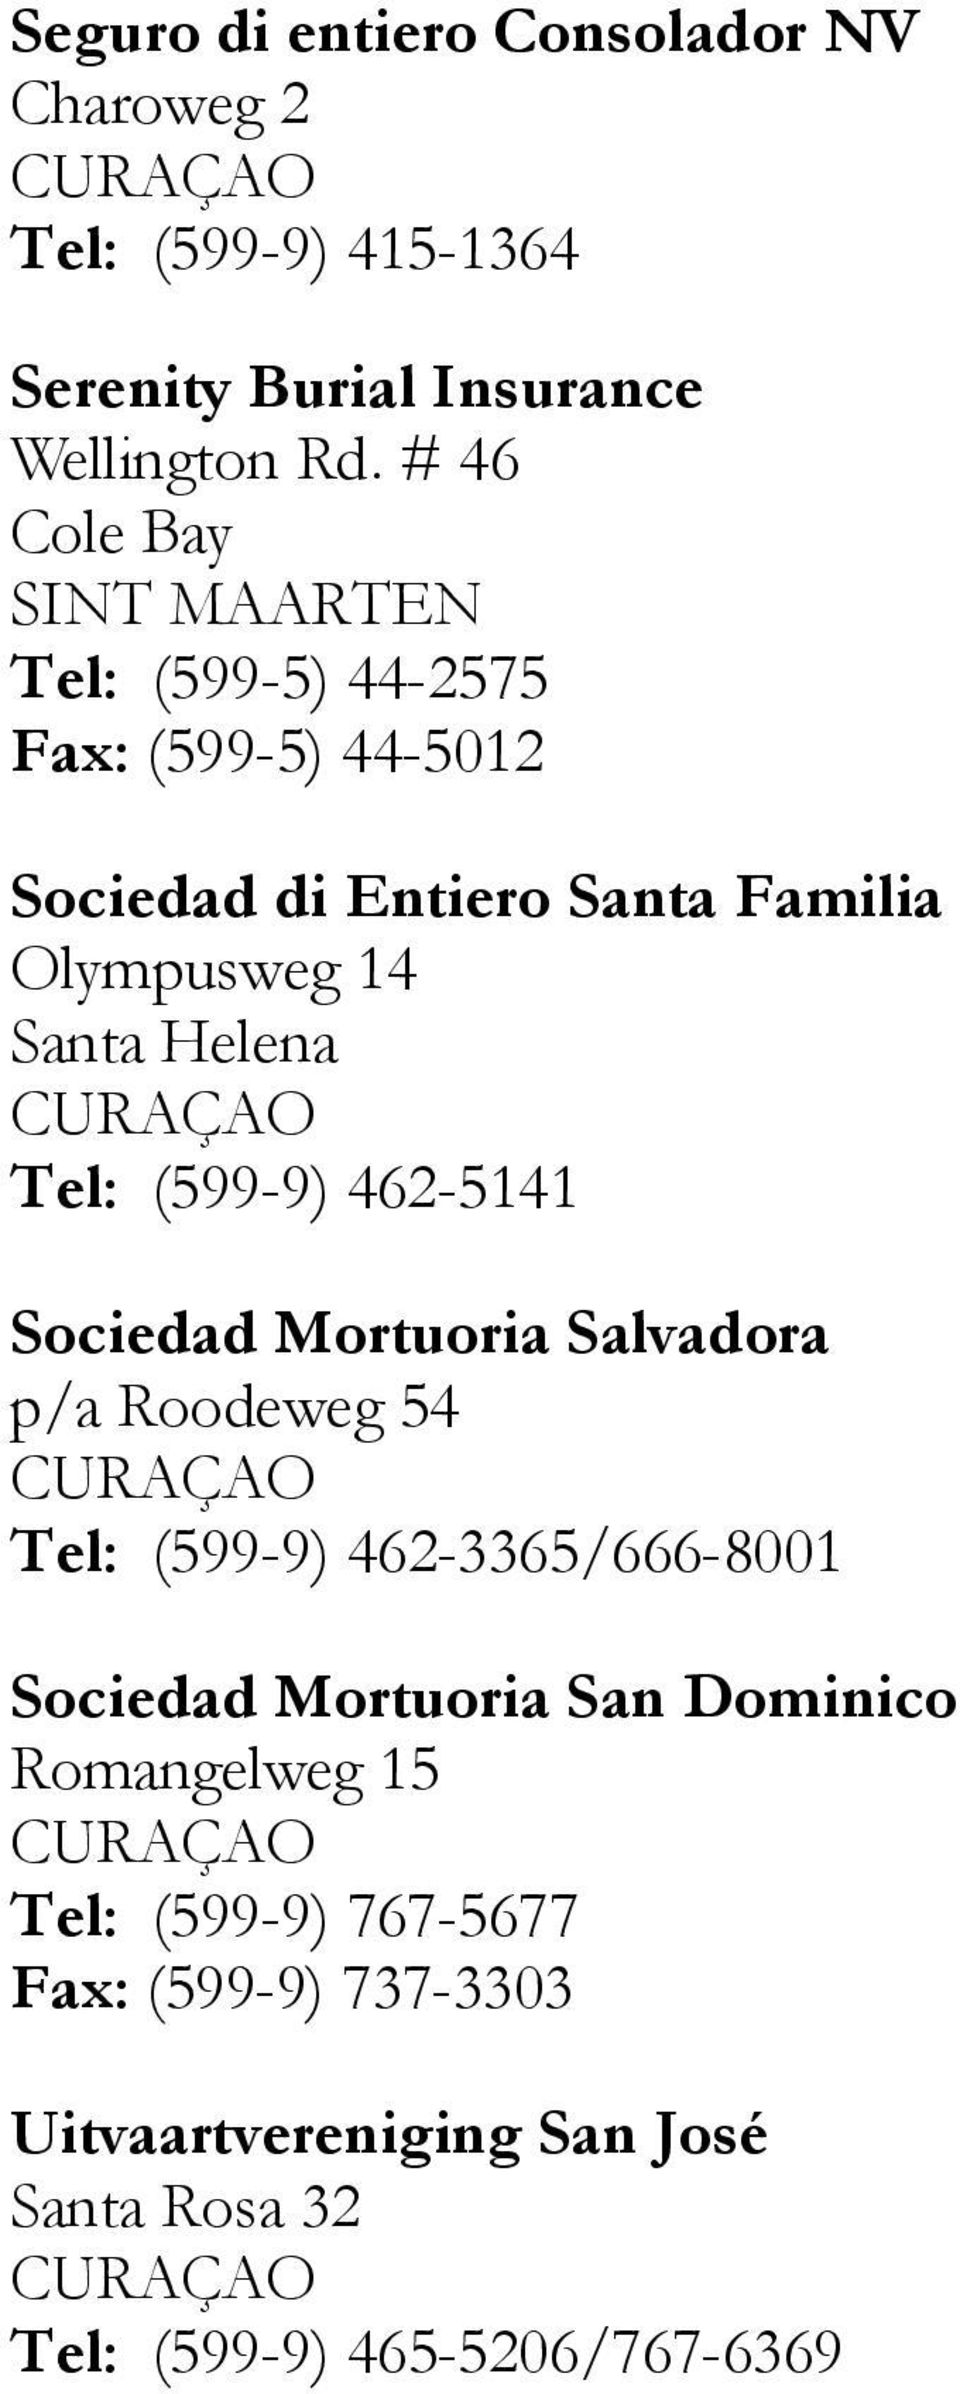 Helena Tel: (599-9) 462-5141 Sociedad Mortuoria Salvadora p/a Roodeweg 54 Tel: (599-9) 462-3365/666-8001 Sociedad Mortuoria